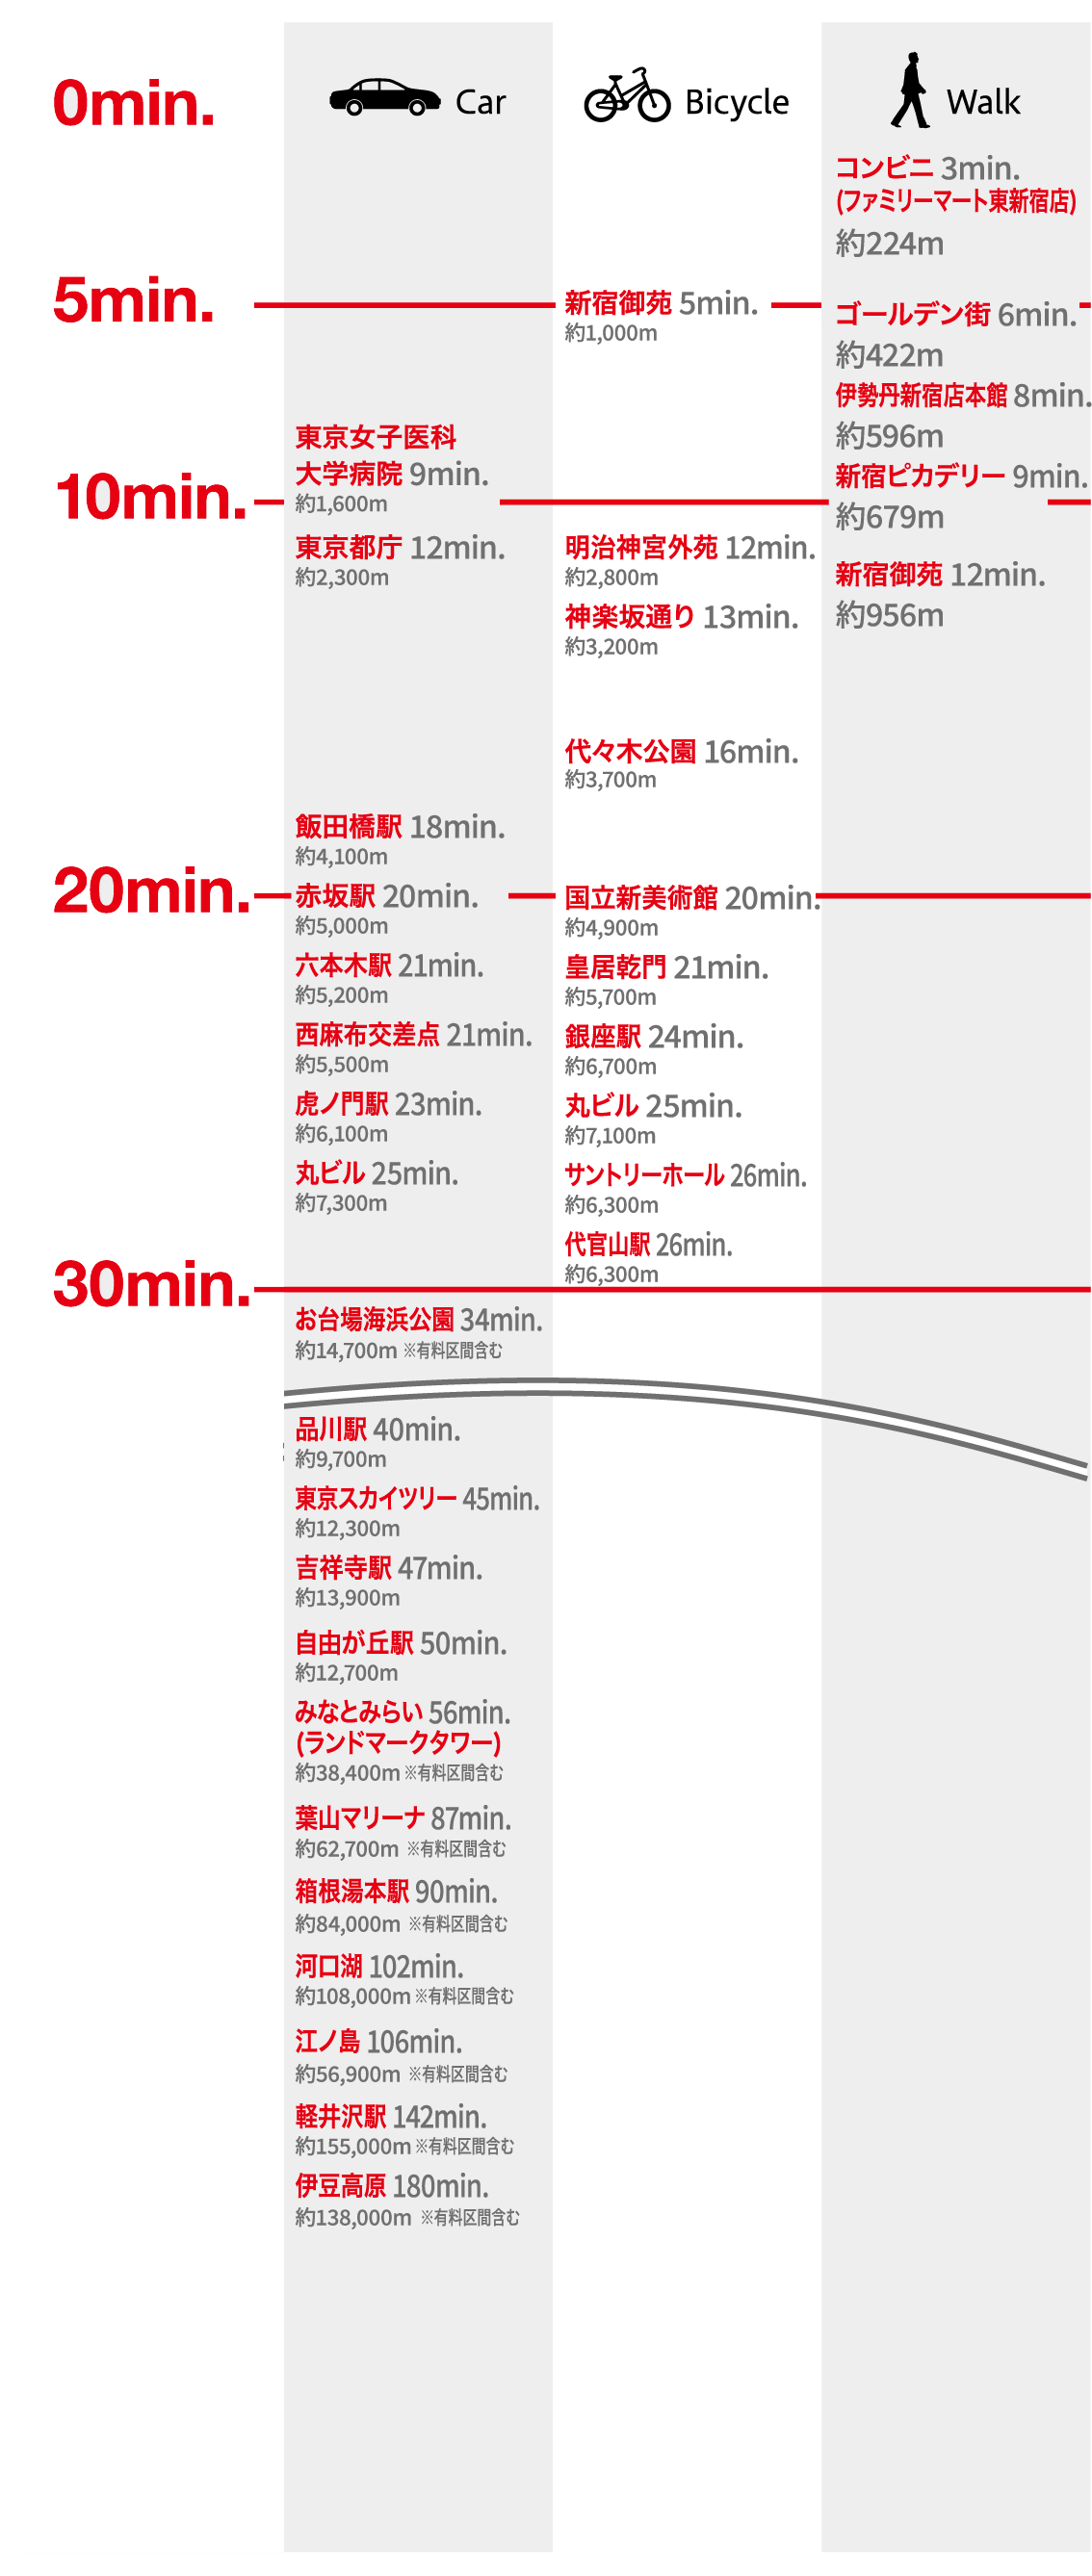 新宿のマンションだから可能となるビジネスとエンジョイライフ地点への所要時間比較図。新宿三丁目駅、東新宿駅、新宿駅の3駅を利用した鉄道アクセス、一般道、高速を利用した自家用車アクセス、また、自転車や徒歩での所用時間。（利用可能駅と路線：新宿三丁目駅（東京メトロ「丸ノ内線」「副都心線」、都営地下鉄「新宿線」）、東新宿駅（東京メトロ「副都心線」、都営地下鉄「大江戸線」）、新宿駅（JR、東京メトロ「丸ノ内線」、都営地下鉄「新宿線」「大江戸線」））